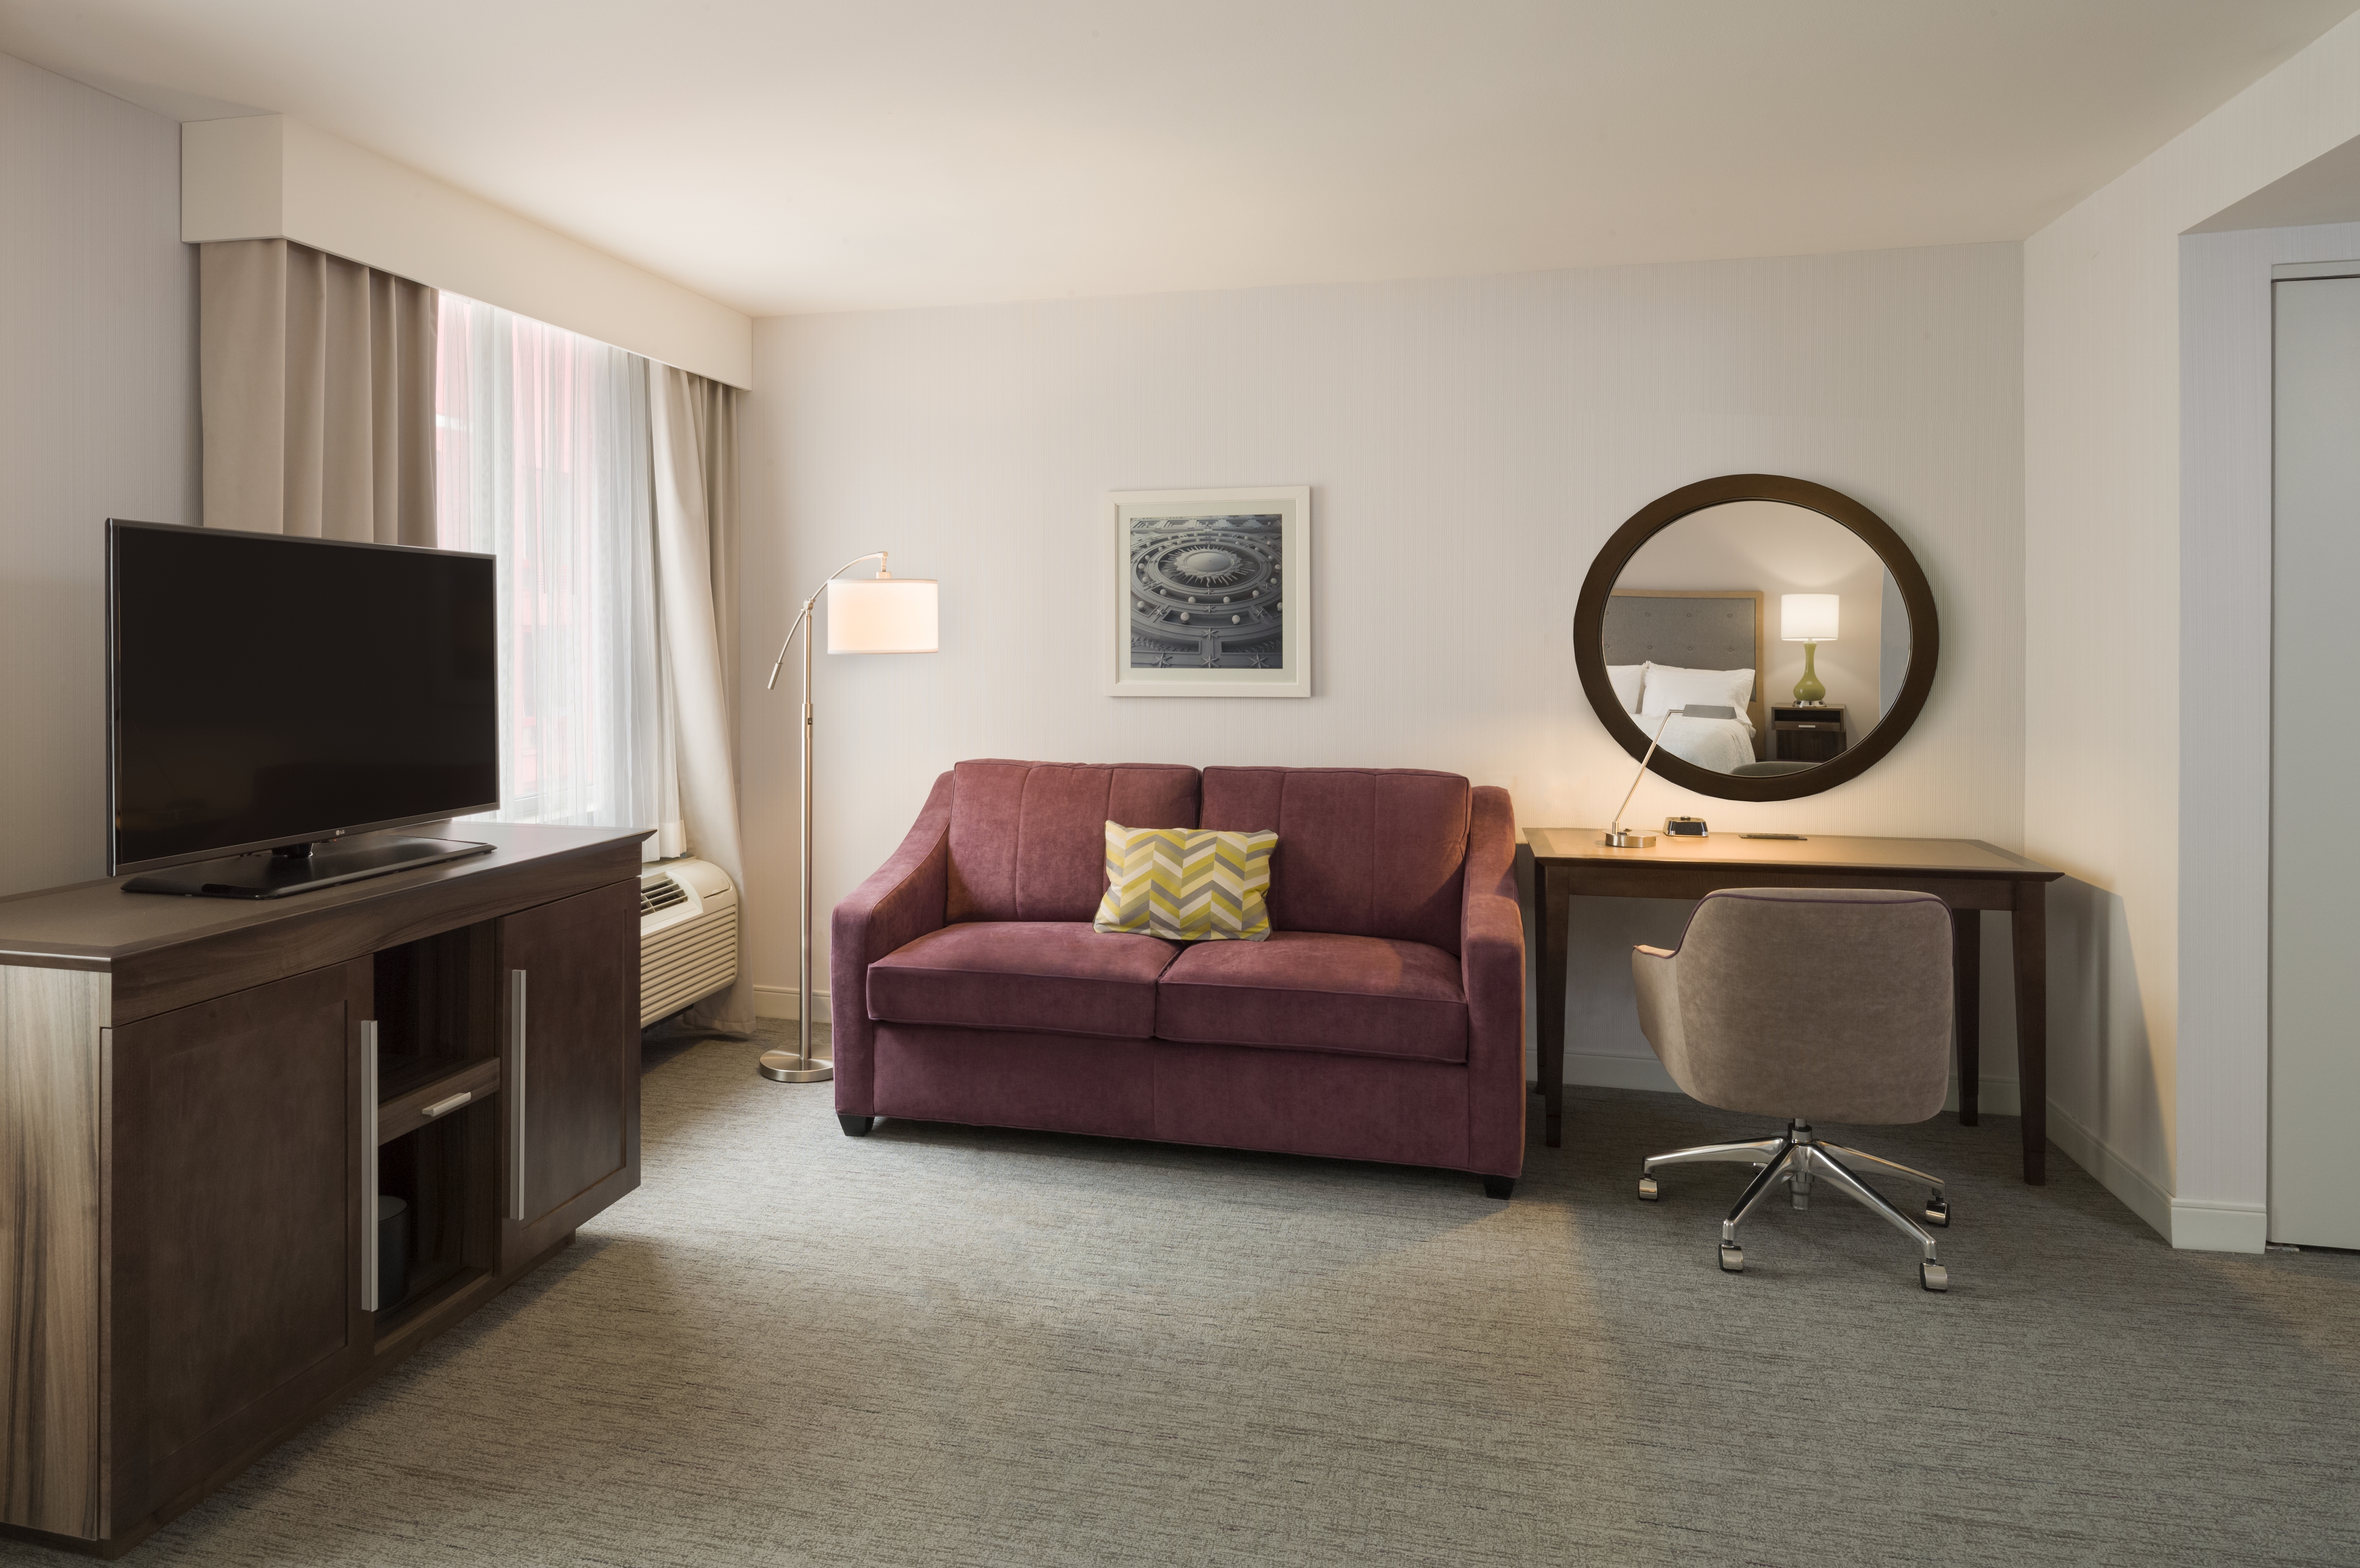 Suite attrezzata per ospiti con disabilità con un letto king size - Zona soggiorno